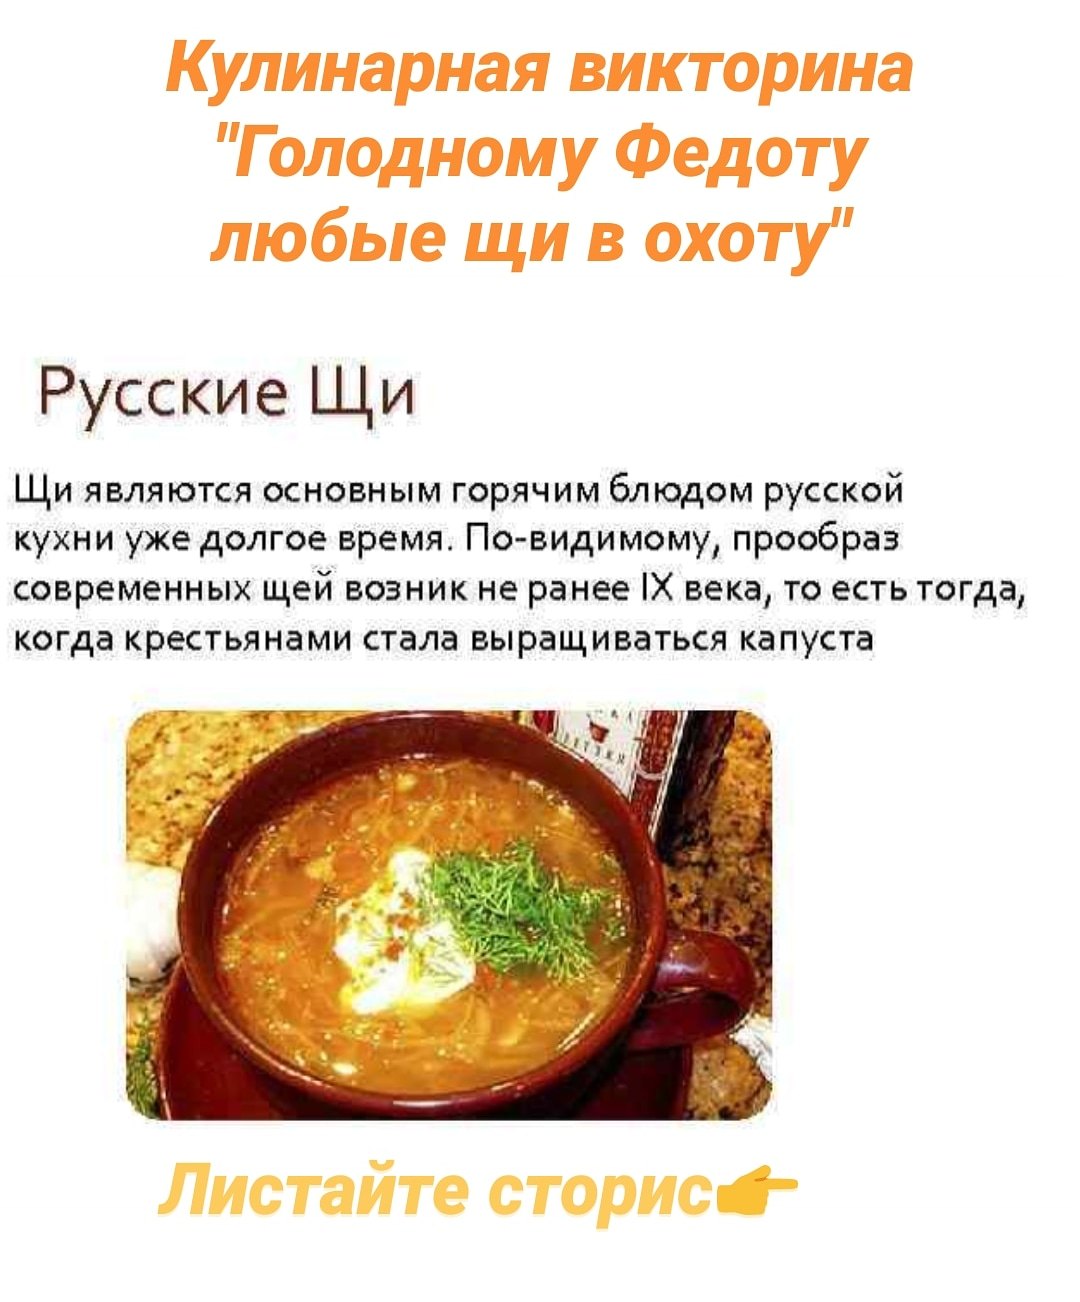 Сообщение о русском блюде